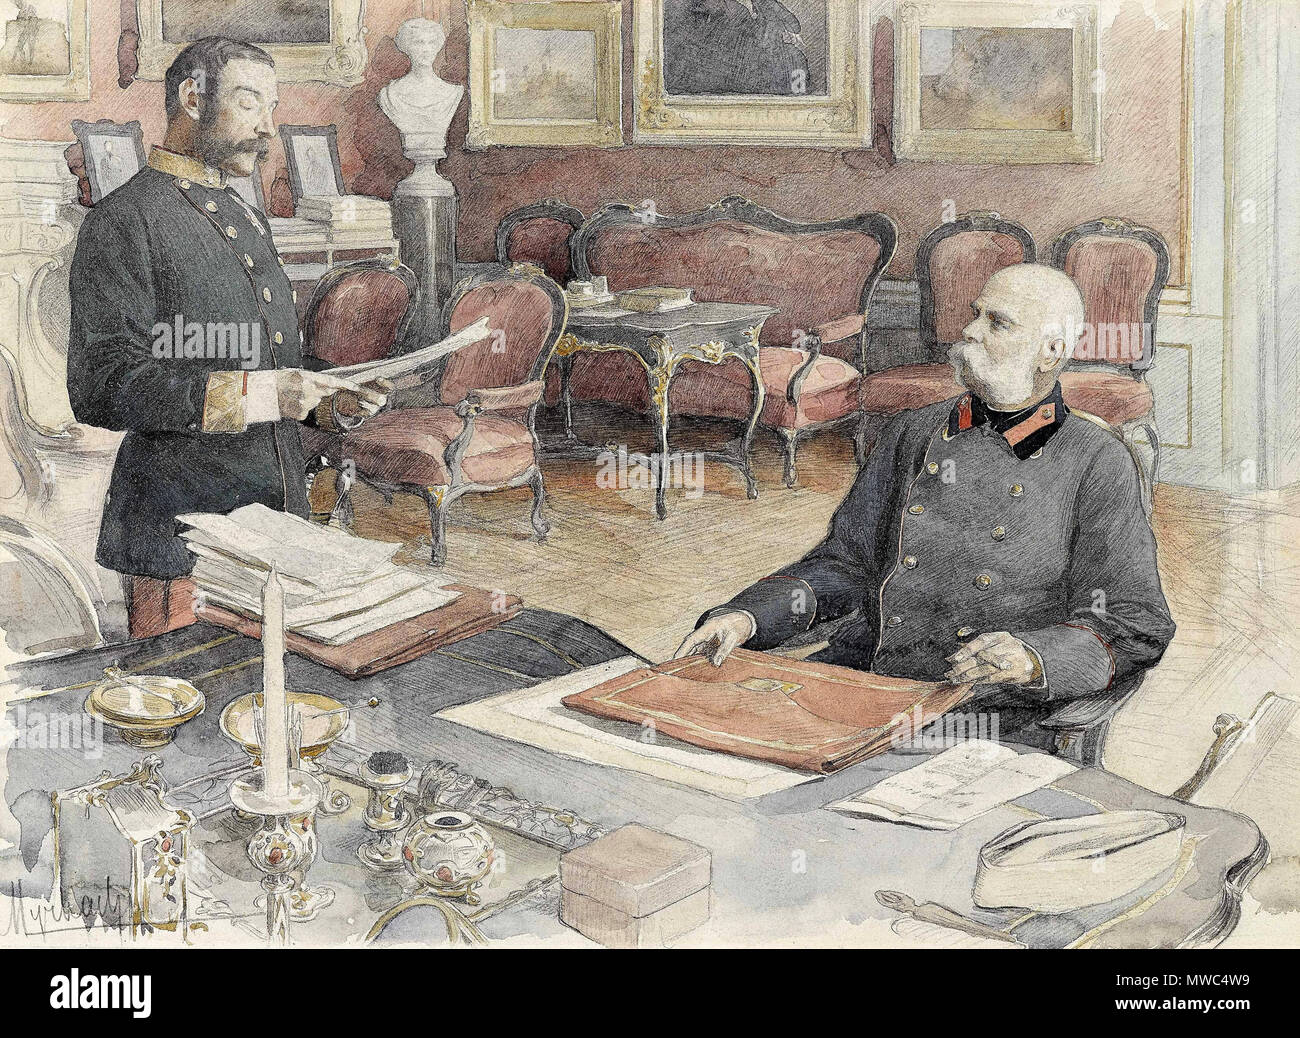 204 Felician von Myrbach-Rheinfeld - Kaiser Franz Joseph I. von Österreich an seinem Schreibtisch in der Wiener Hofburg Stock Photo